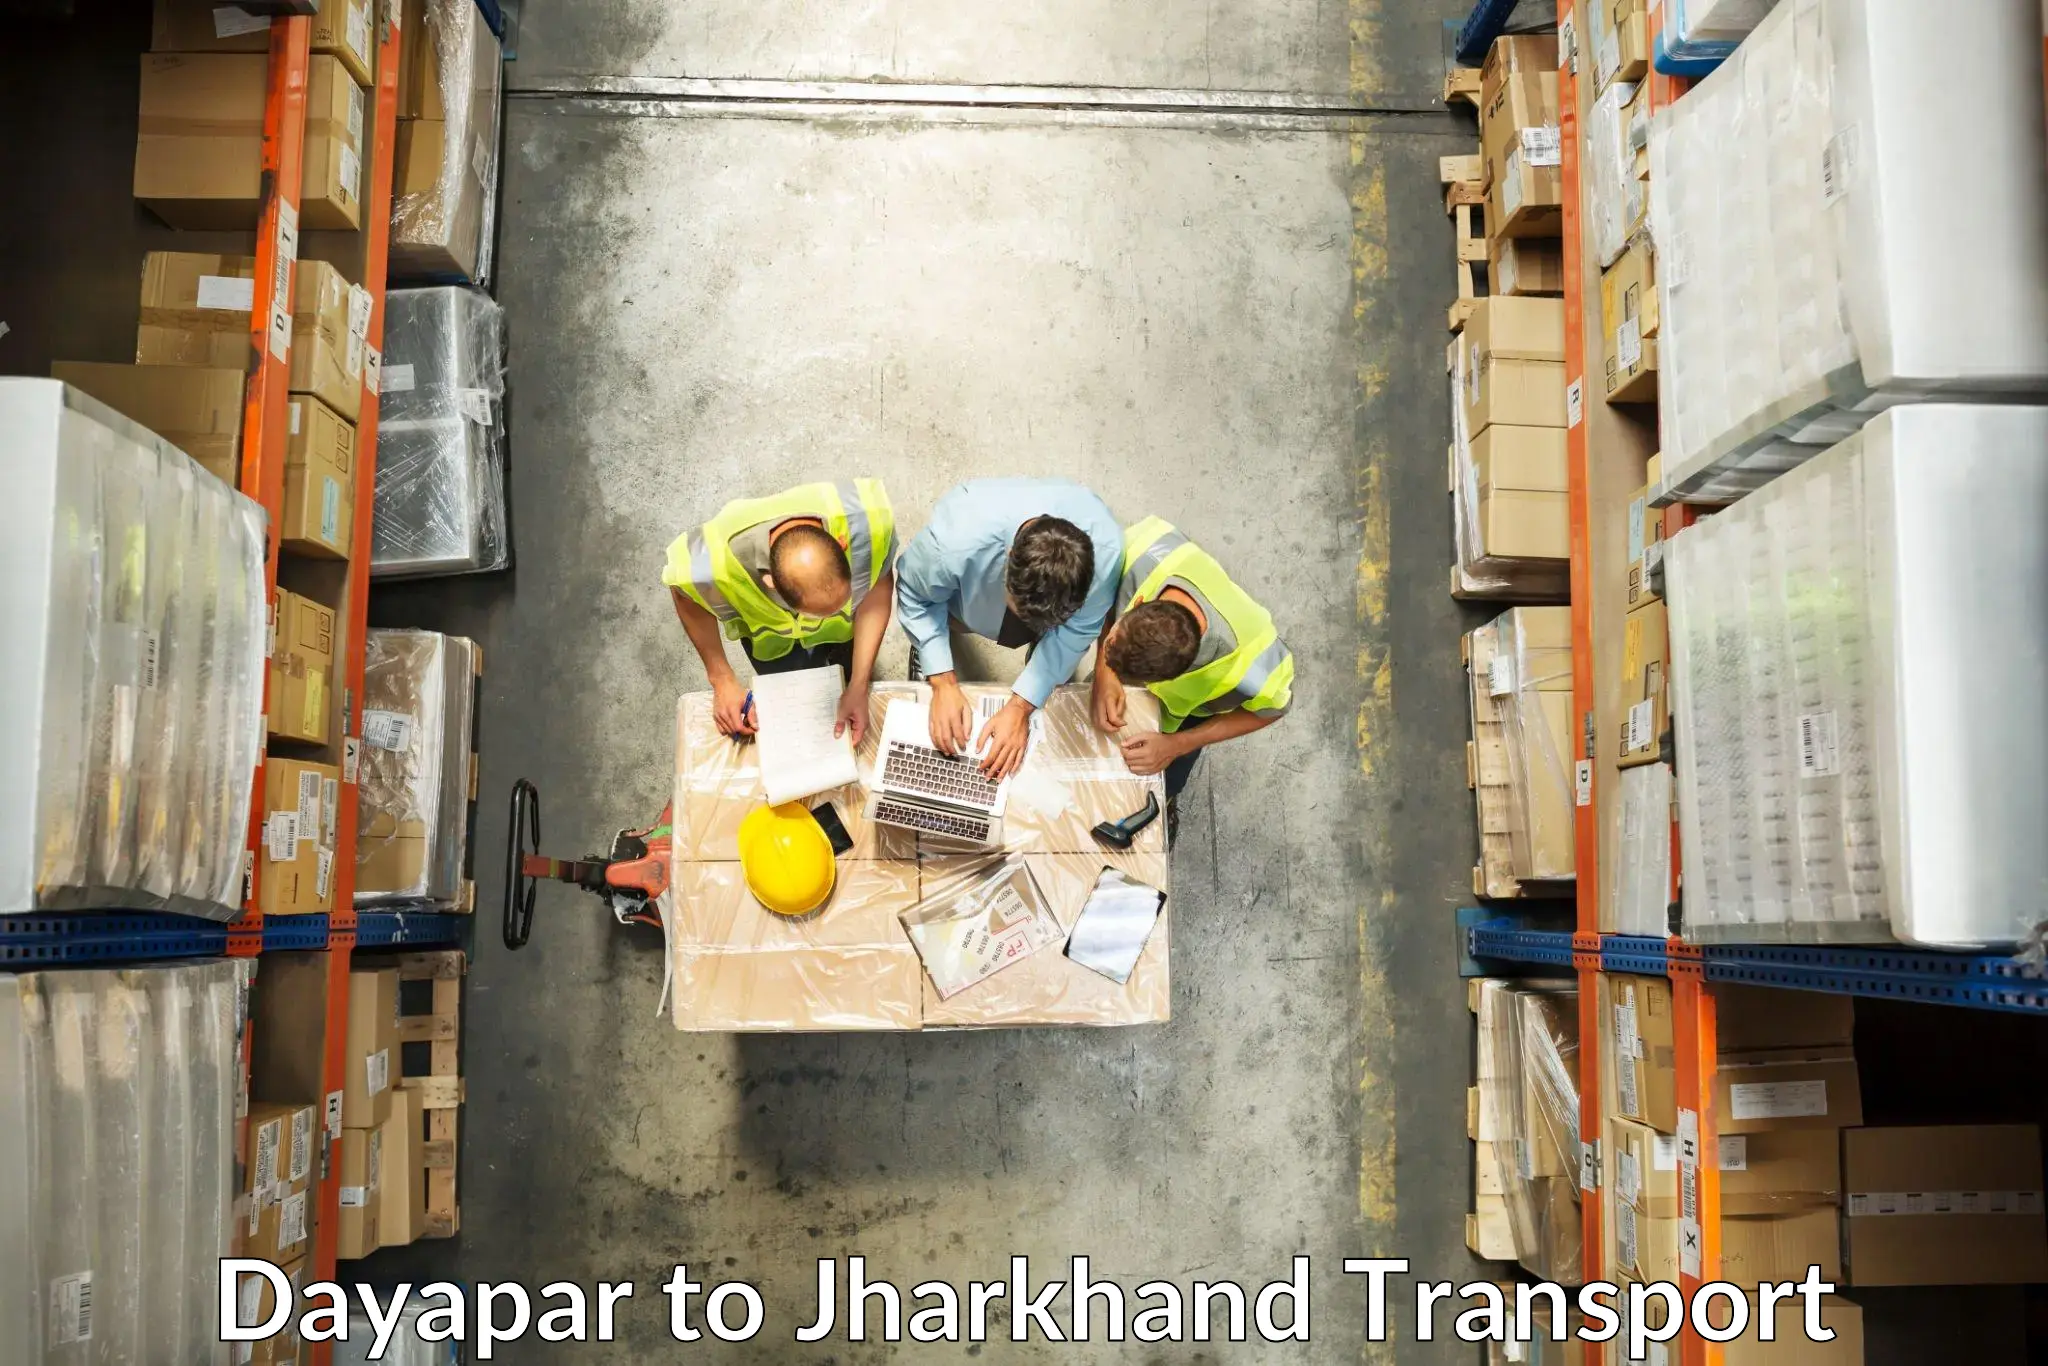 Transport shared services Dayapar to Jharkhand